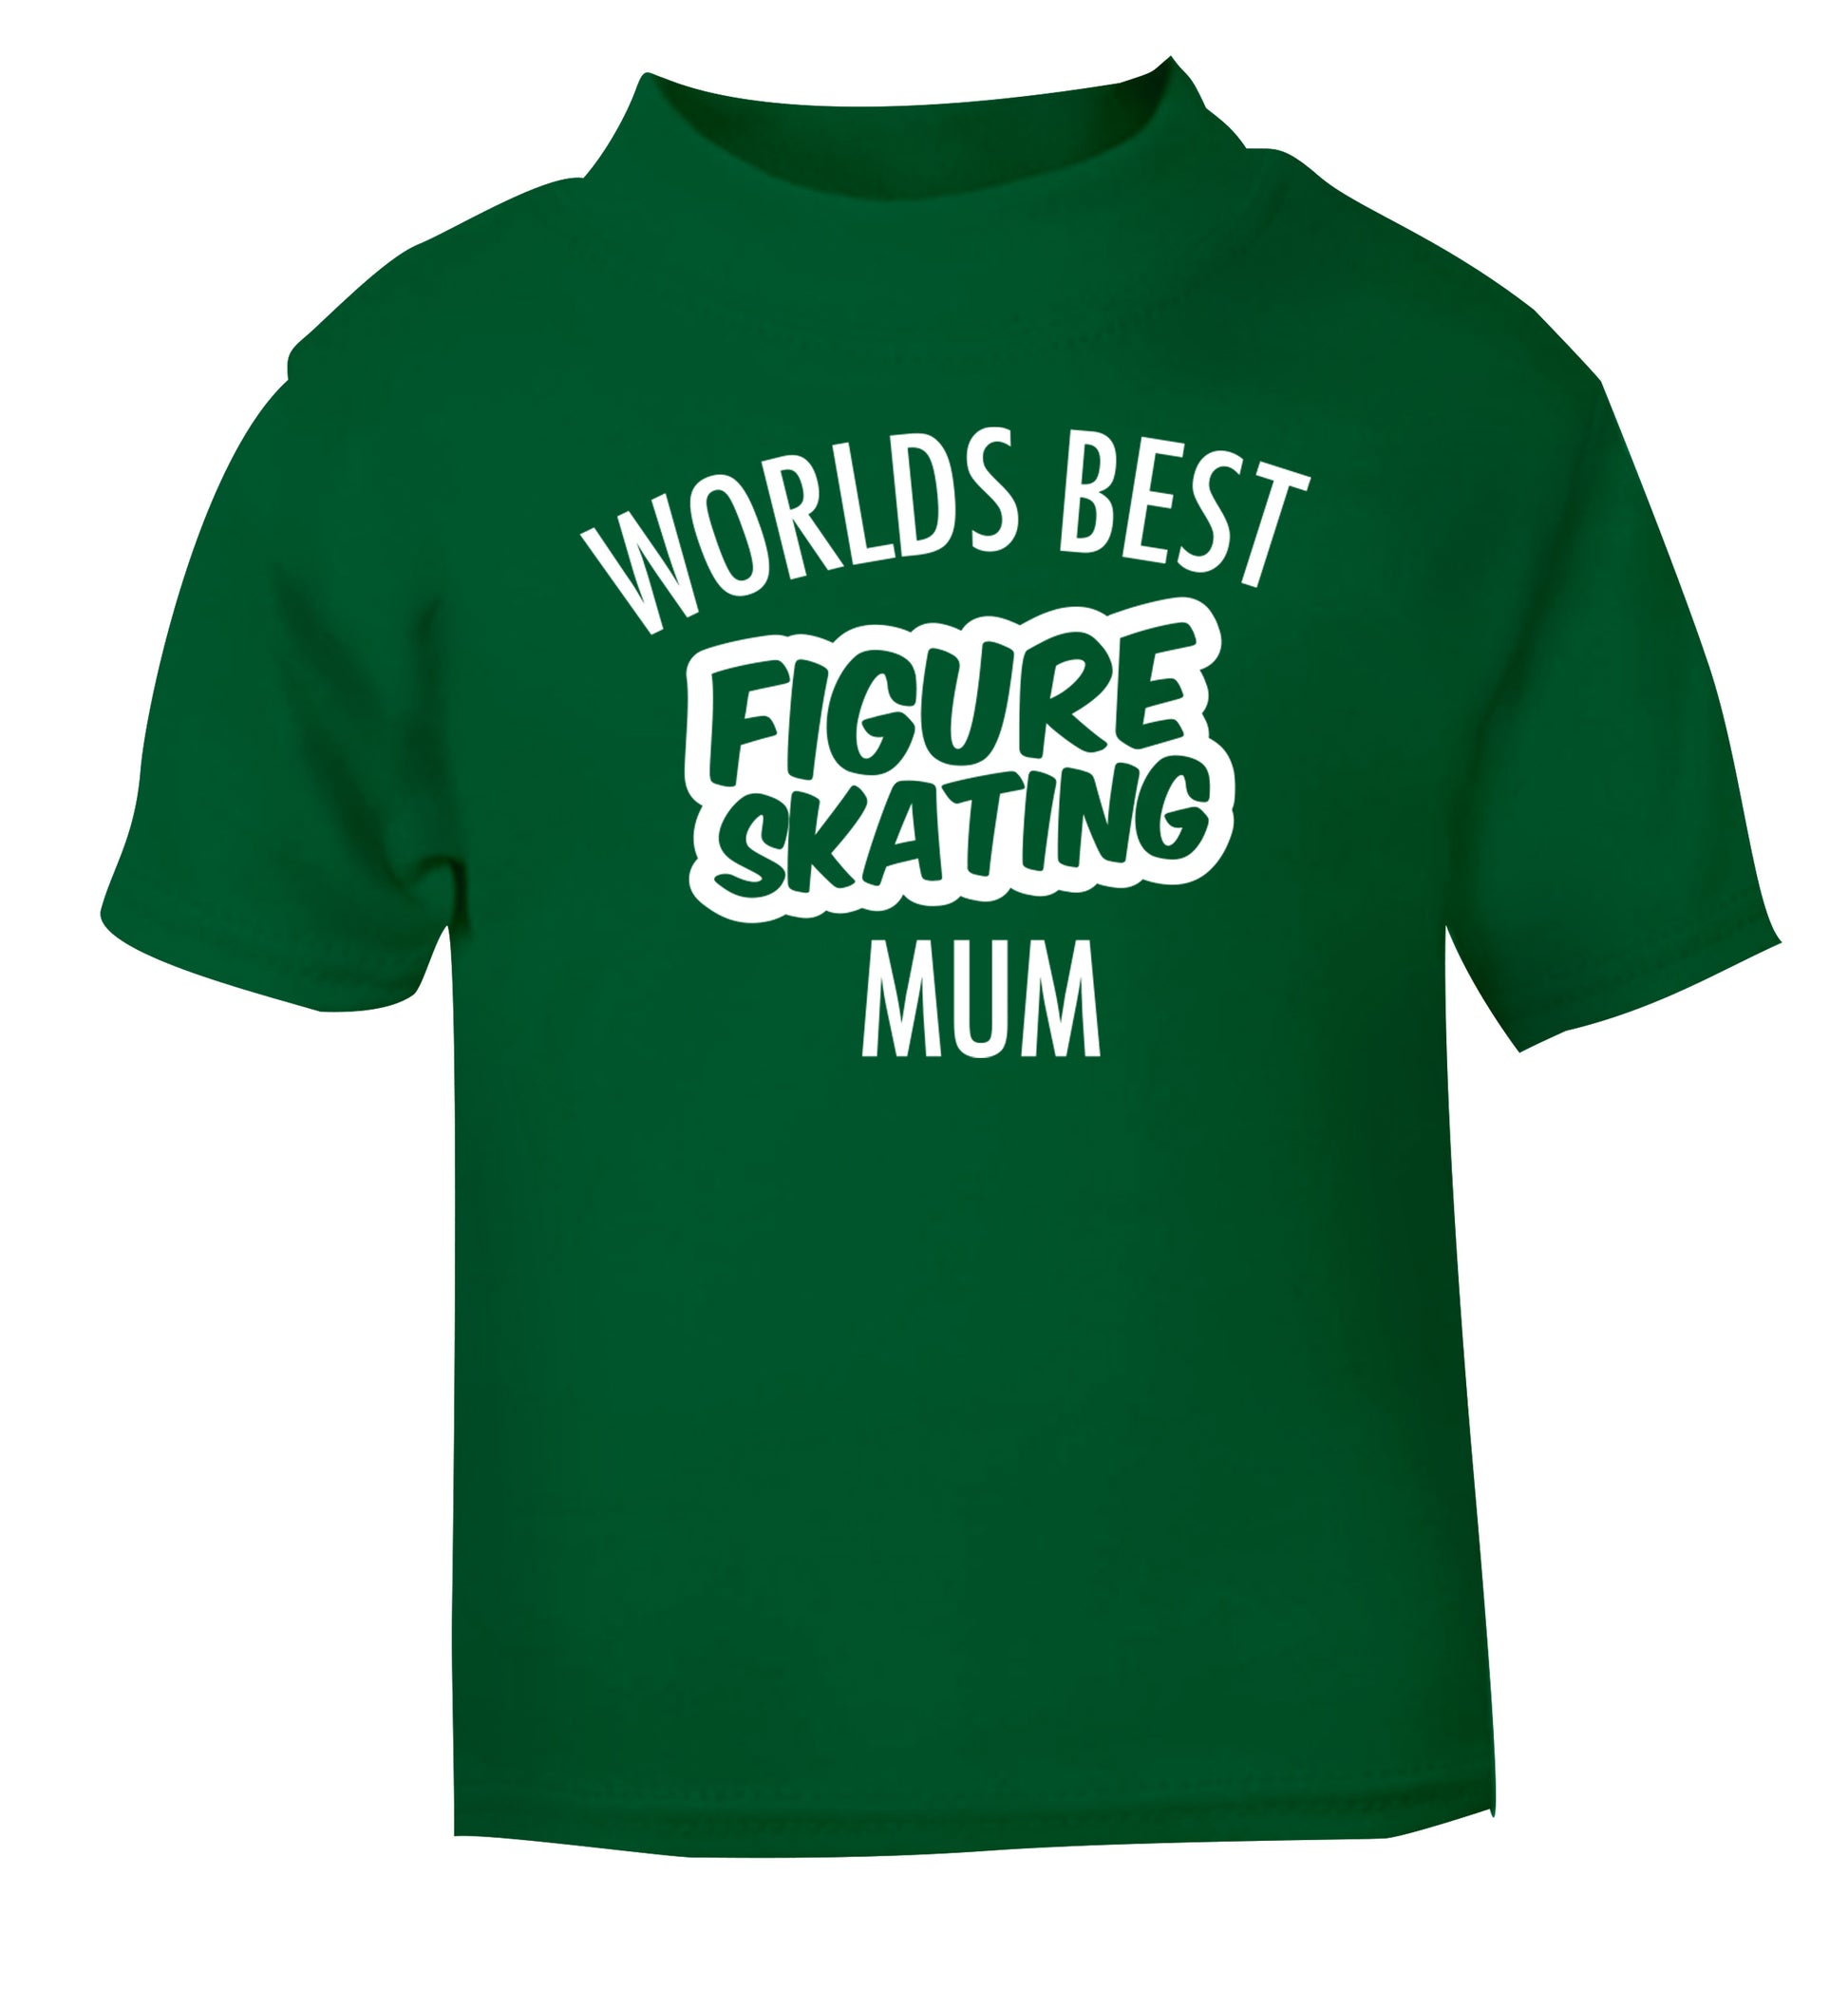 Worlds best figure skating mum green Baby Toddler Tshirt 2 Years